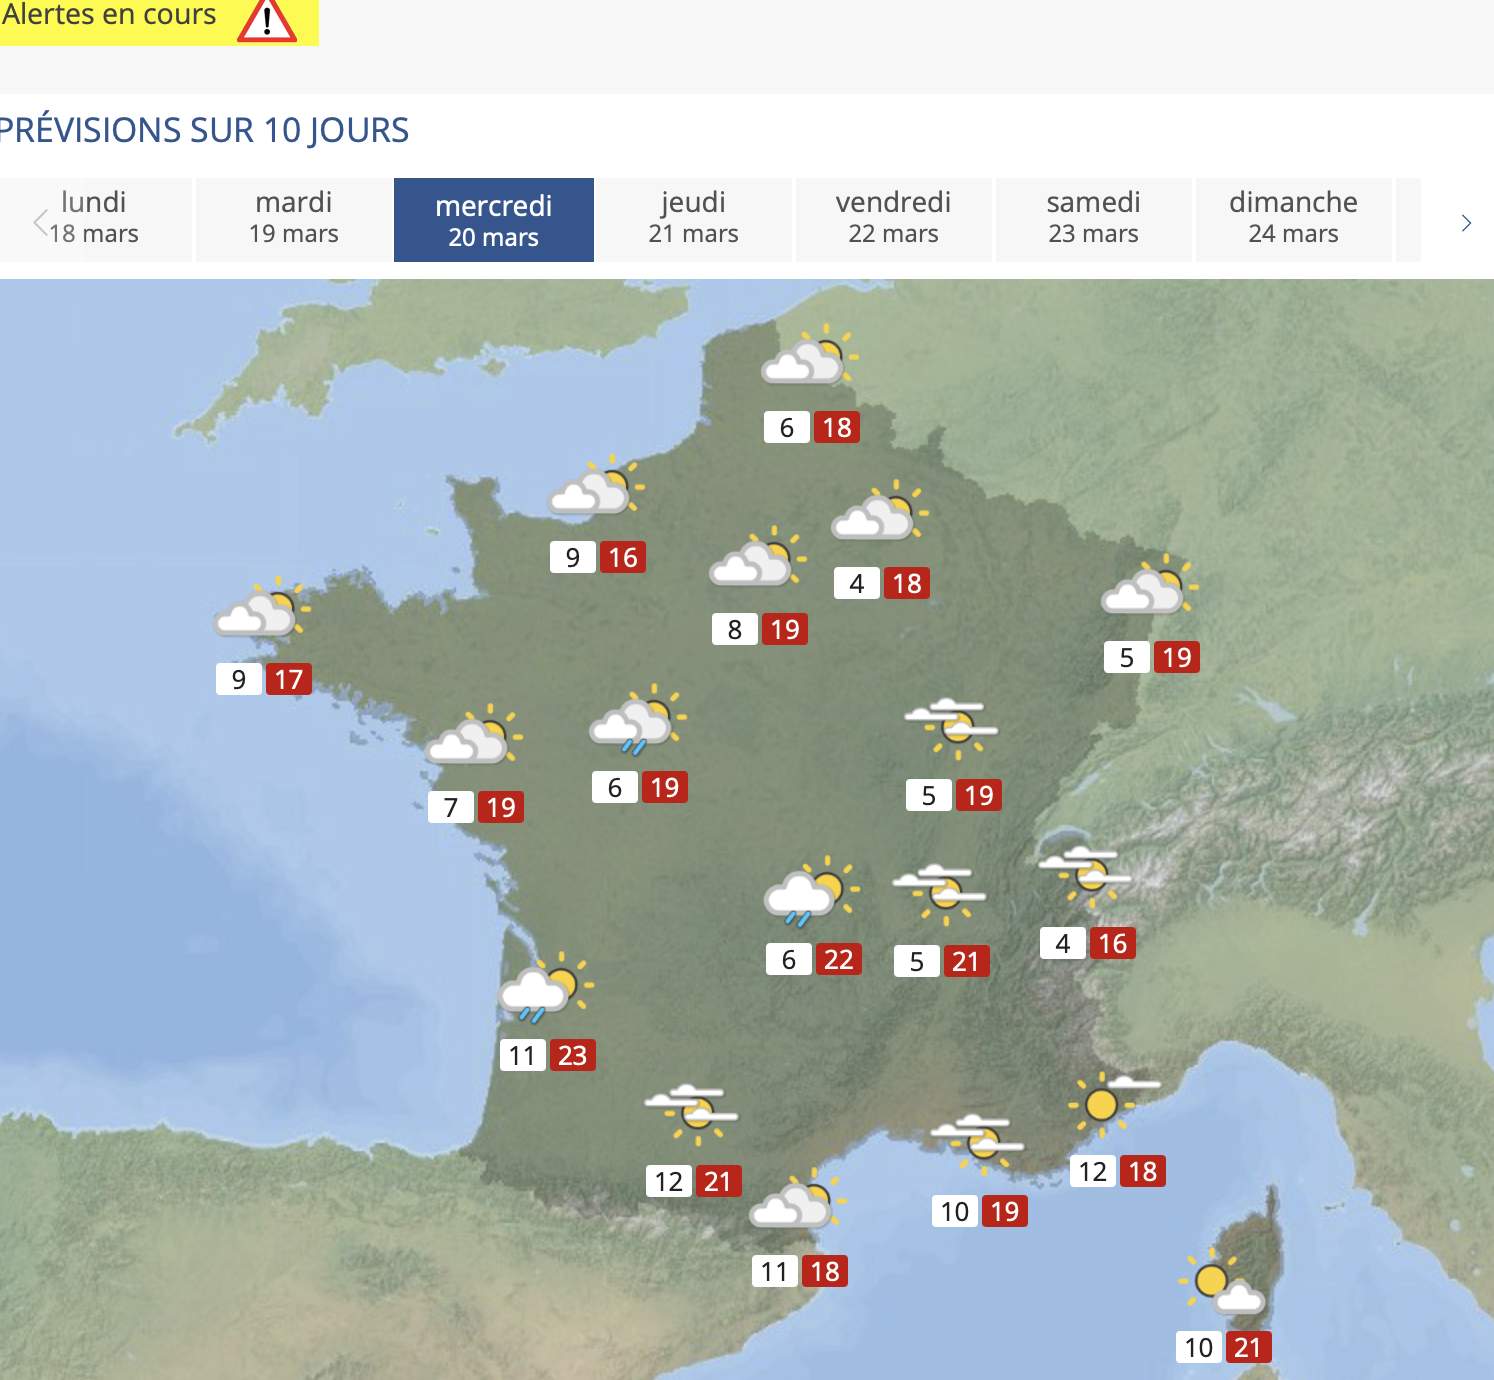 Fig. 3: Douceur en France le jour du printemps (équinoxe); Source: MeteoNews